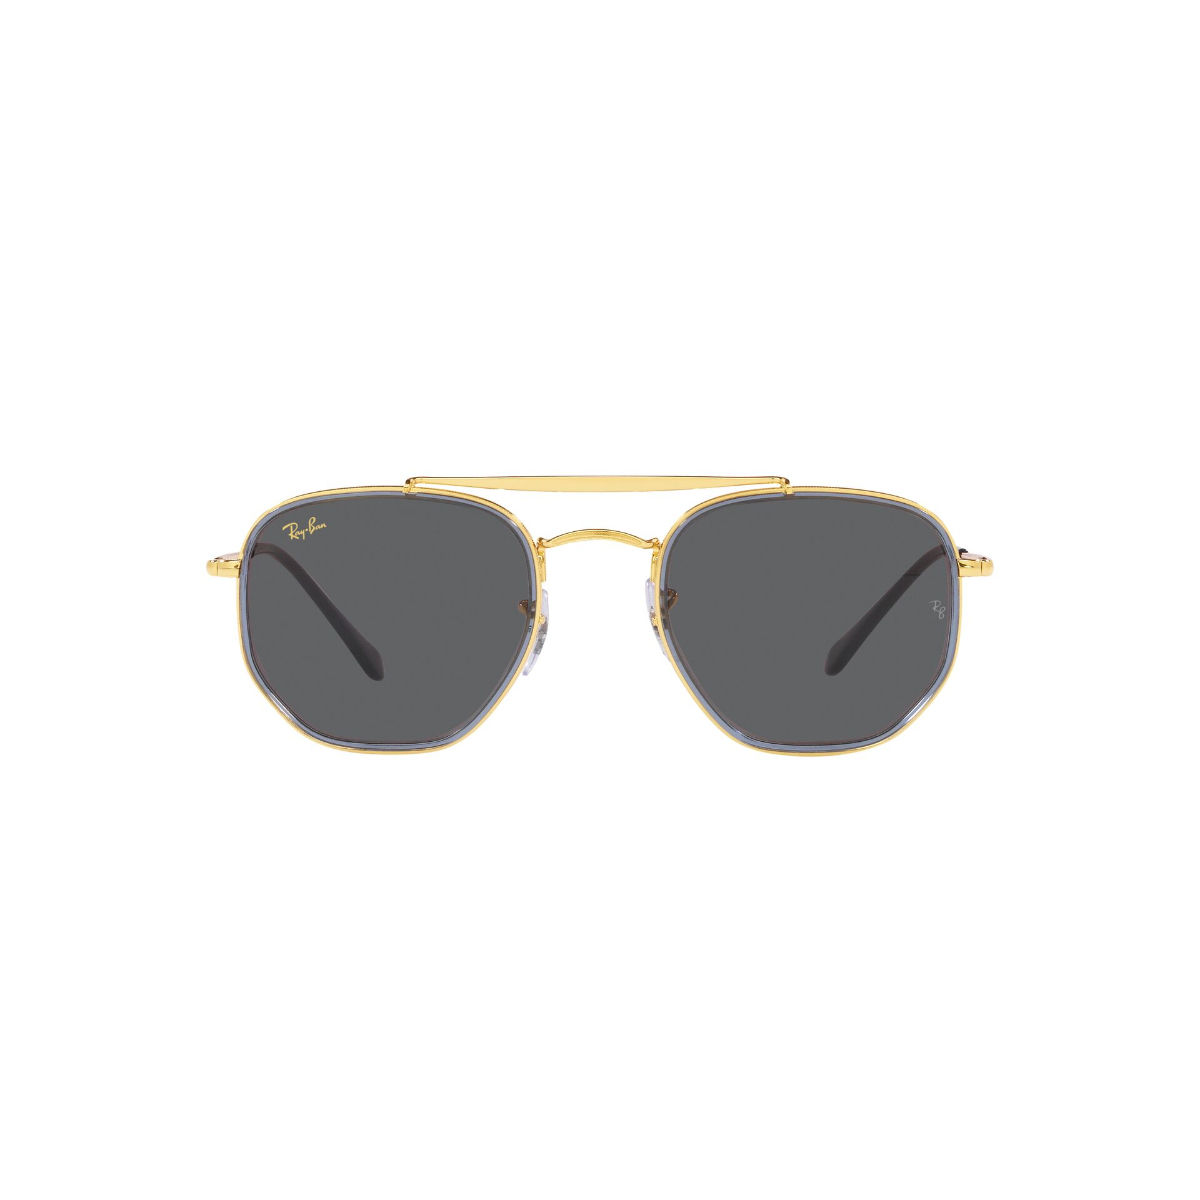 Cazal Sunglasses Men's Legends 745/3 004 Gold-Ivory/Gold Mirror Lenses 48mm  | EyeSpecs.com